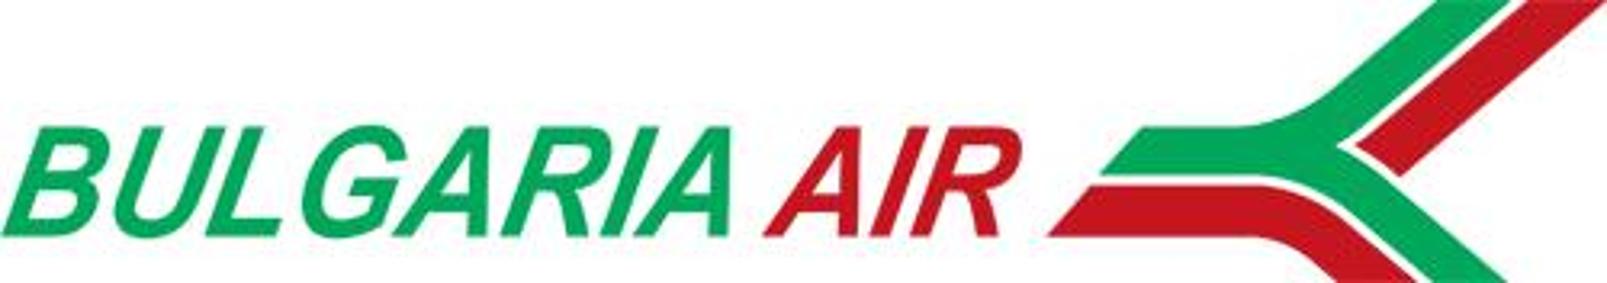 ZOOM Bulgaria Logo photo - 1